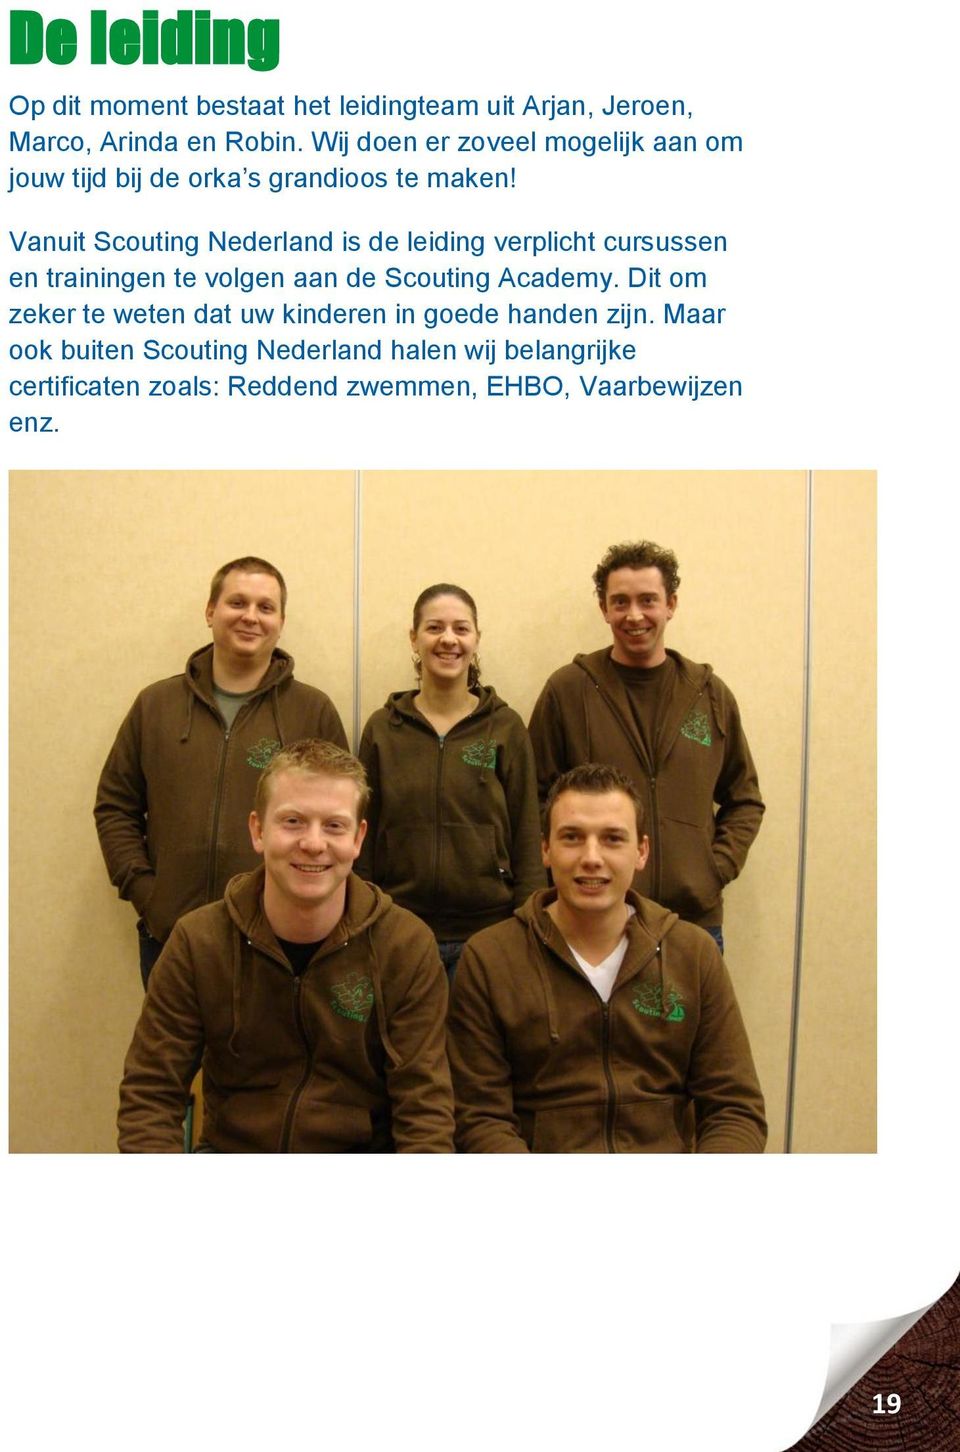 Vanuit Scouting Nederland is de leiding verplicht cursussen en trainingen te volgen aan de Scouting Academy.